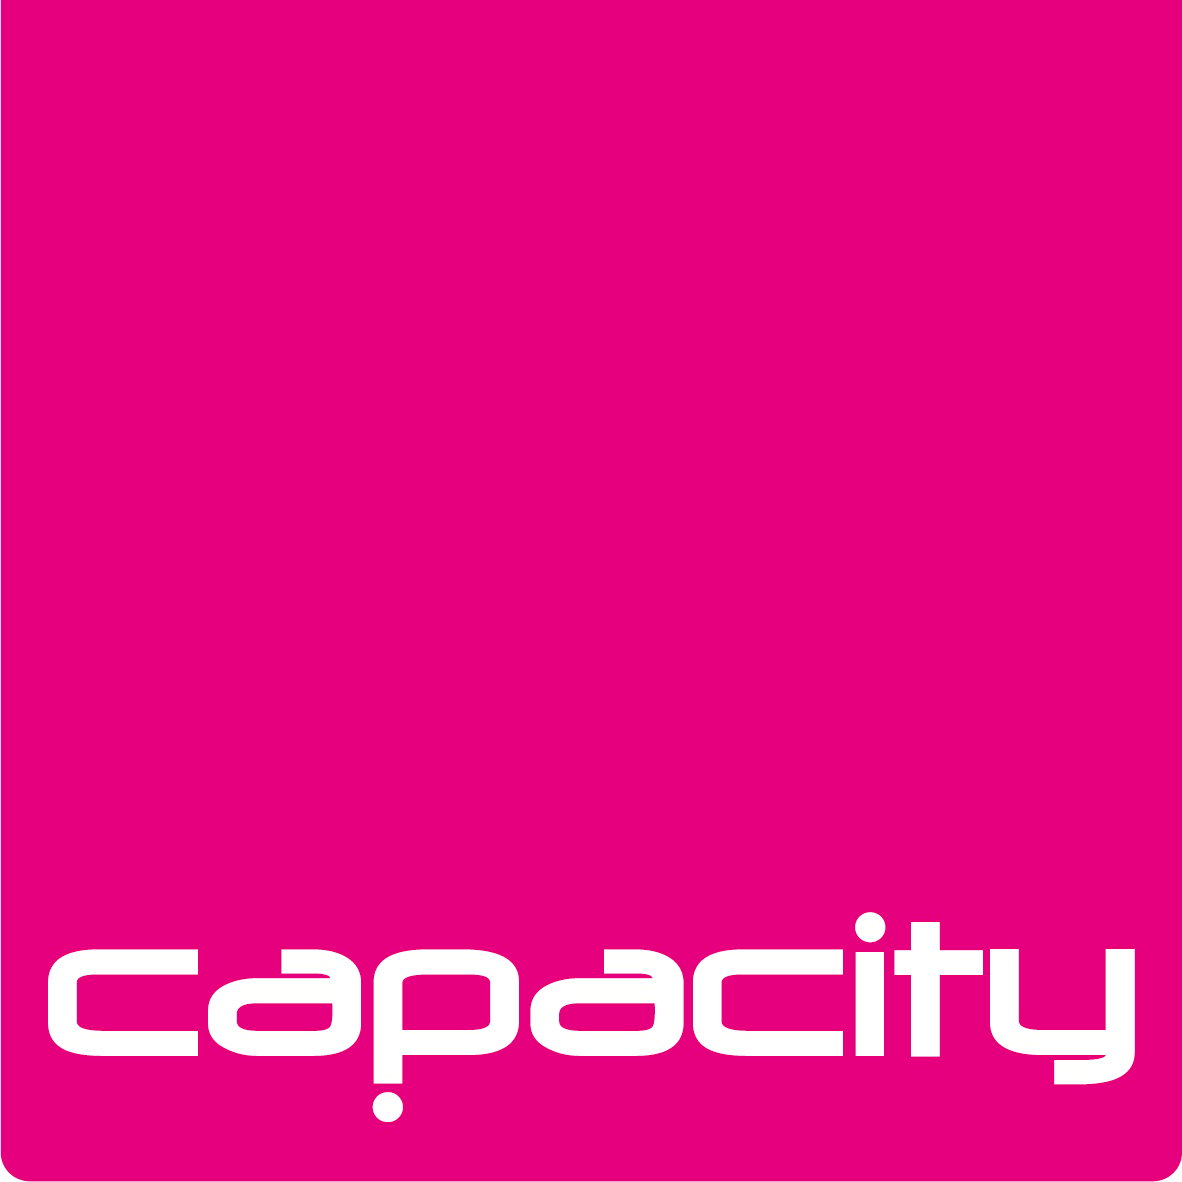 capacity logo -pink-cmyk